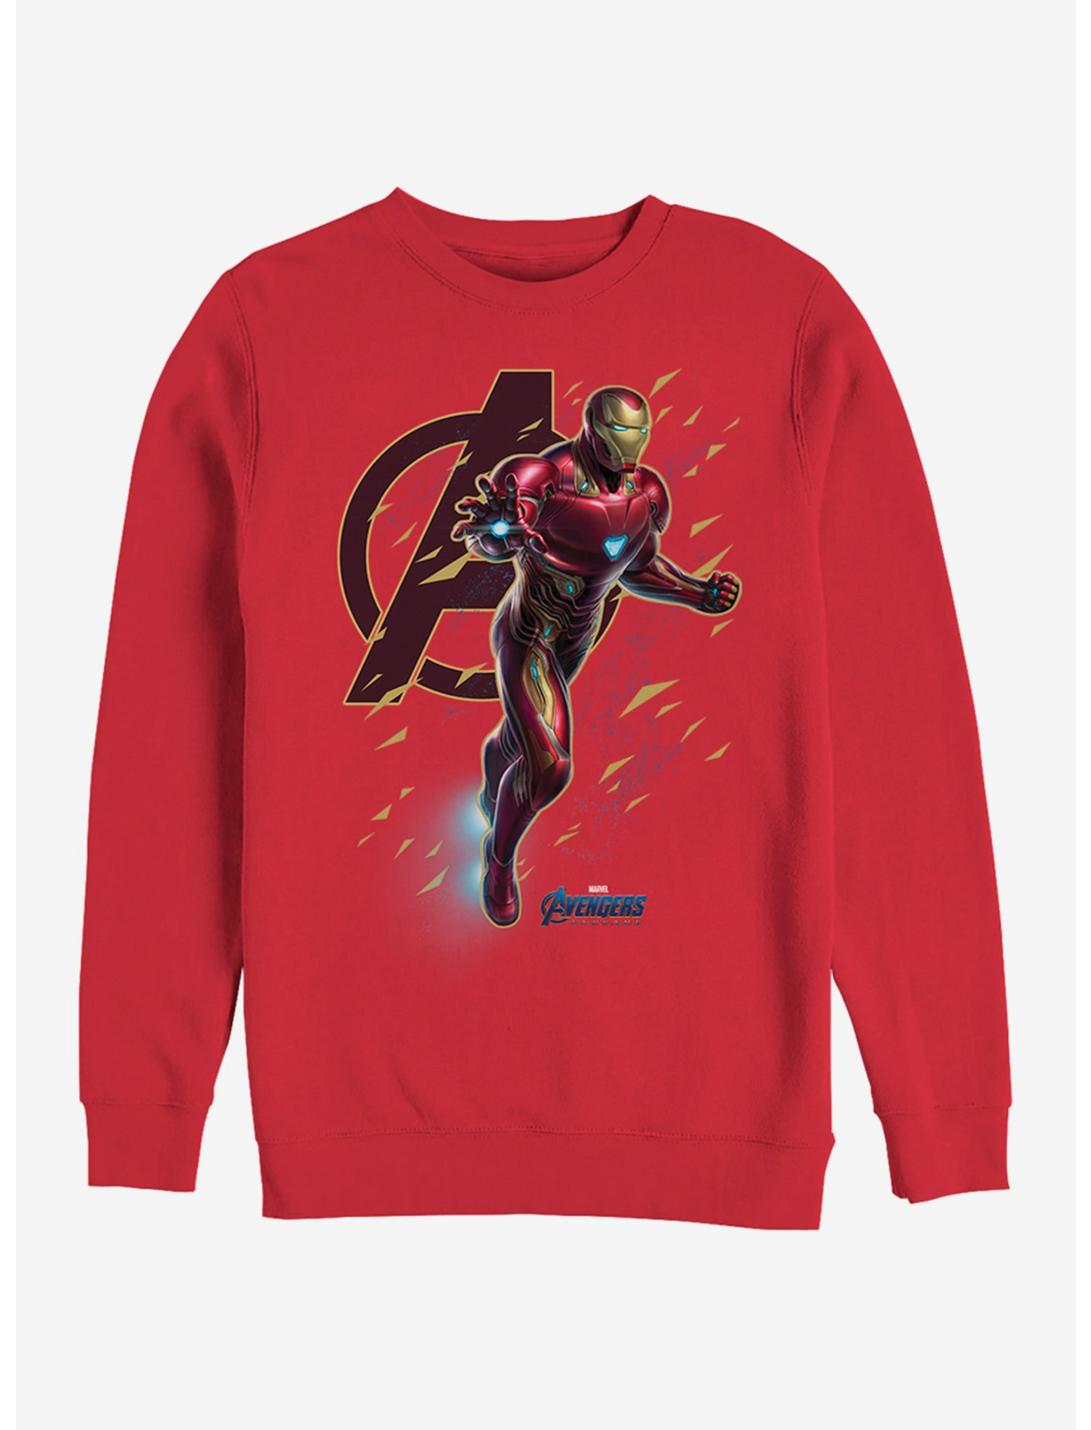 Marvel Avengers: Endgame Suit Flies Red Sweatshirt, RED, hi-res